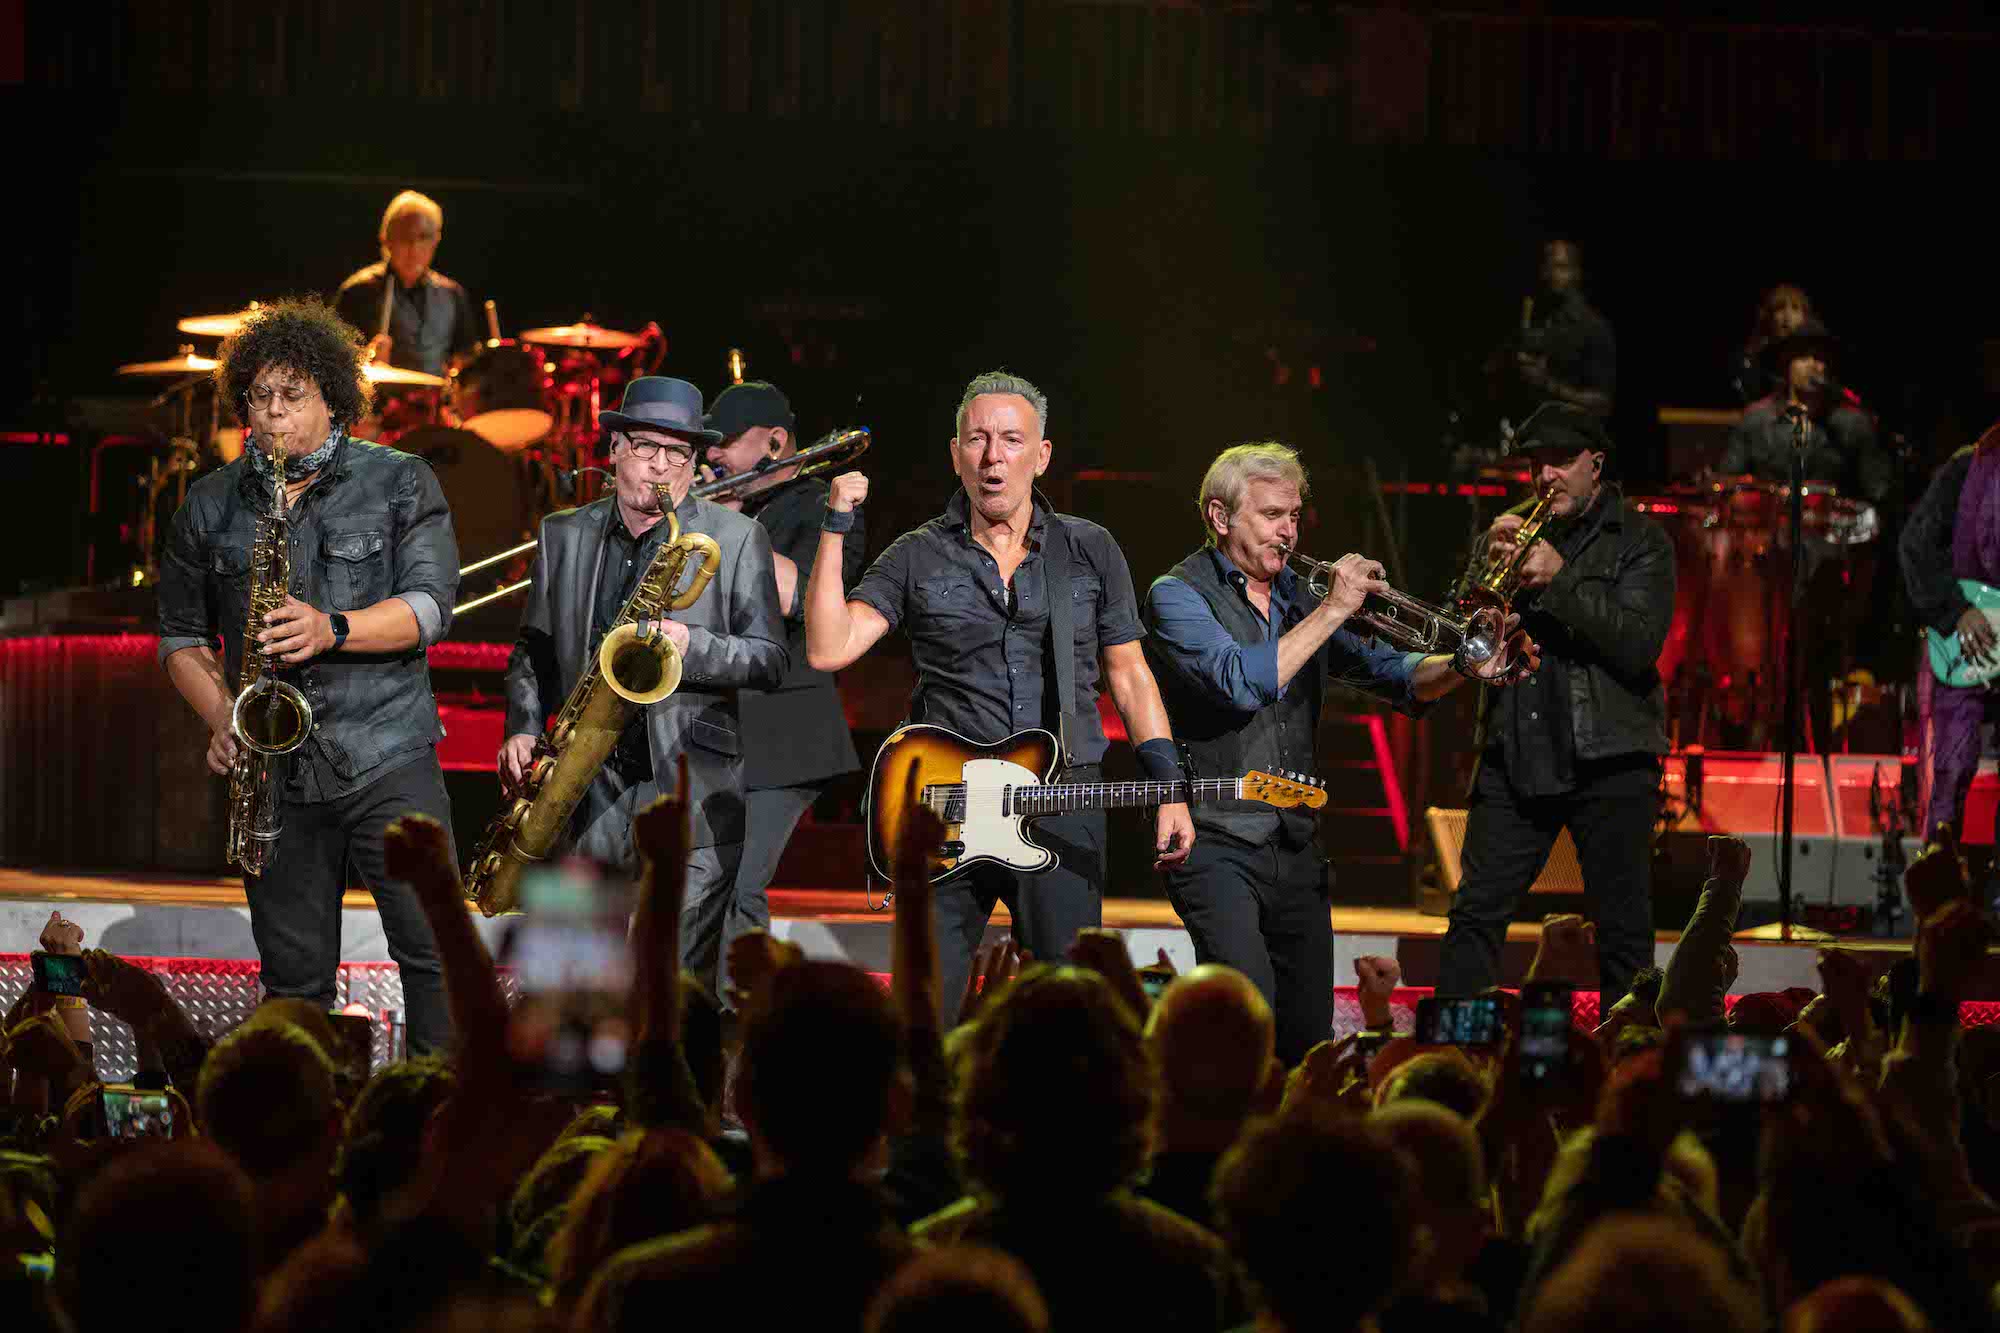 Bruce Springsteen & E Street Band at State Farm Arena, Atlanta, Georgia on February 3, 2023.